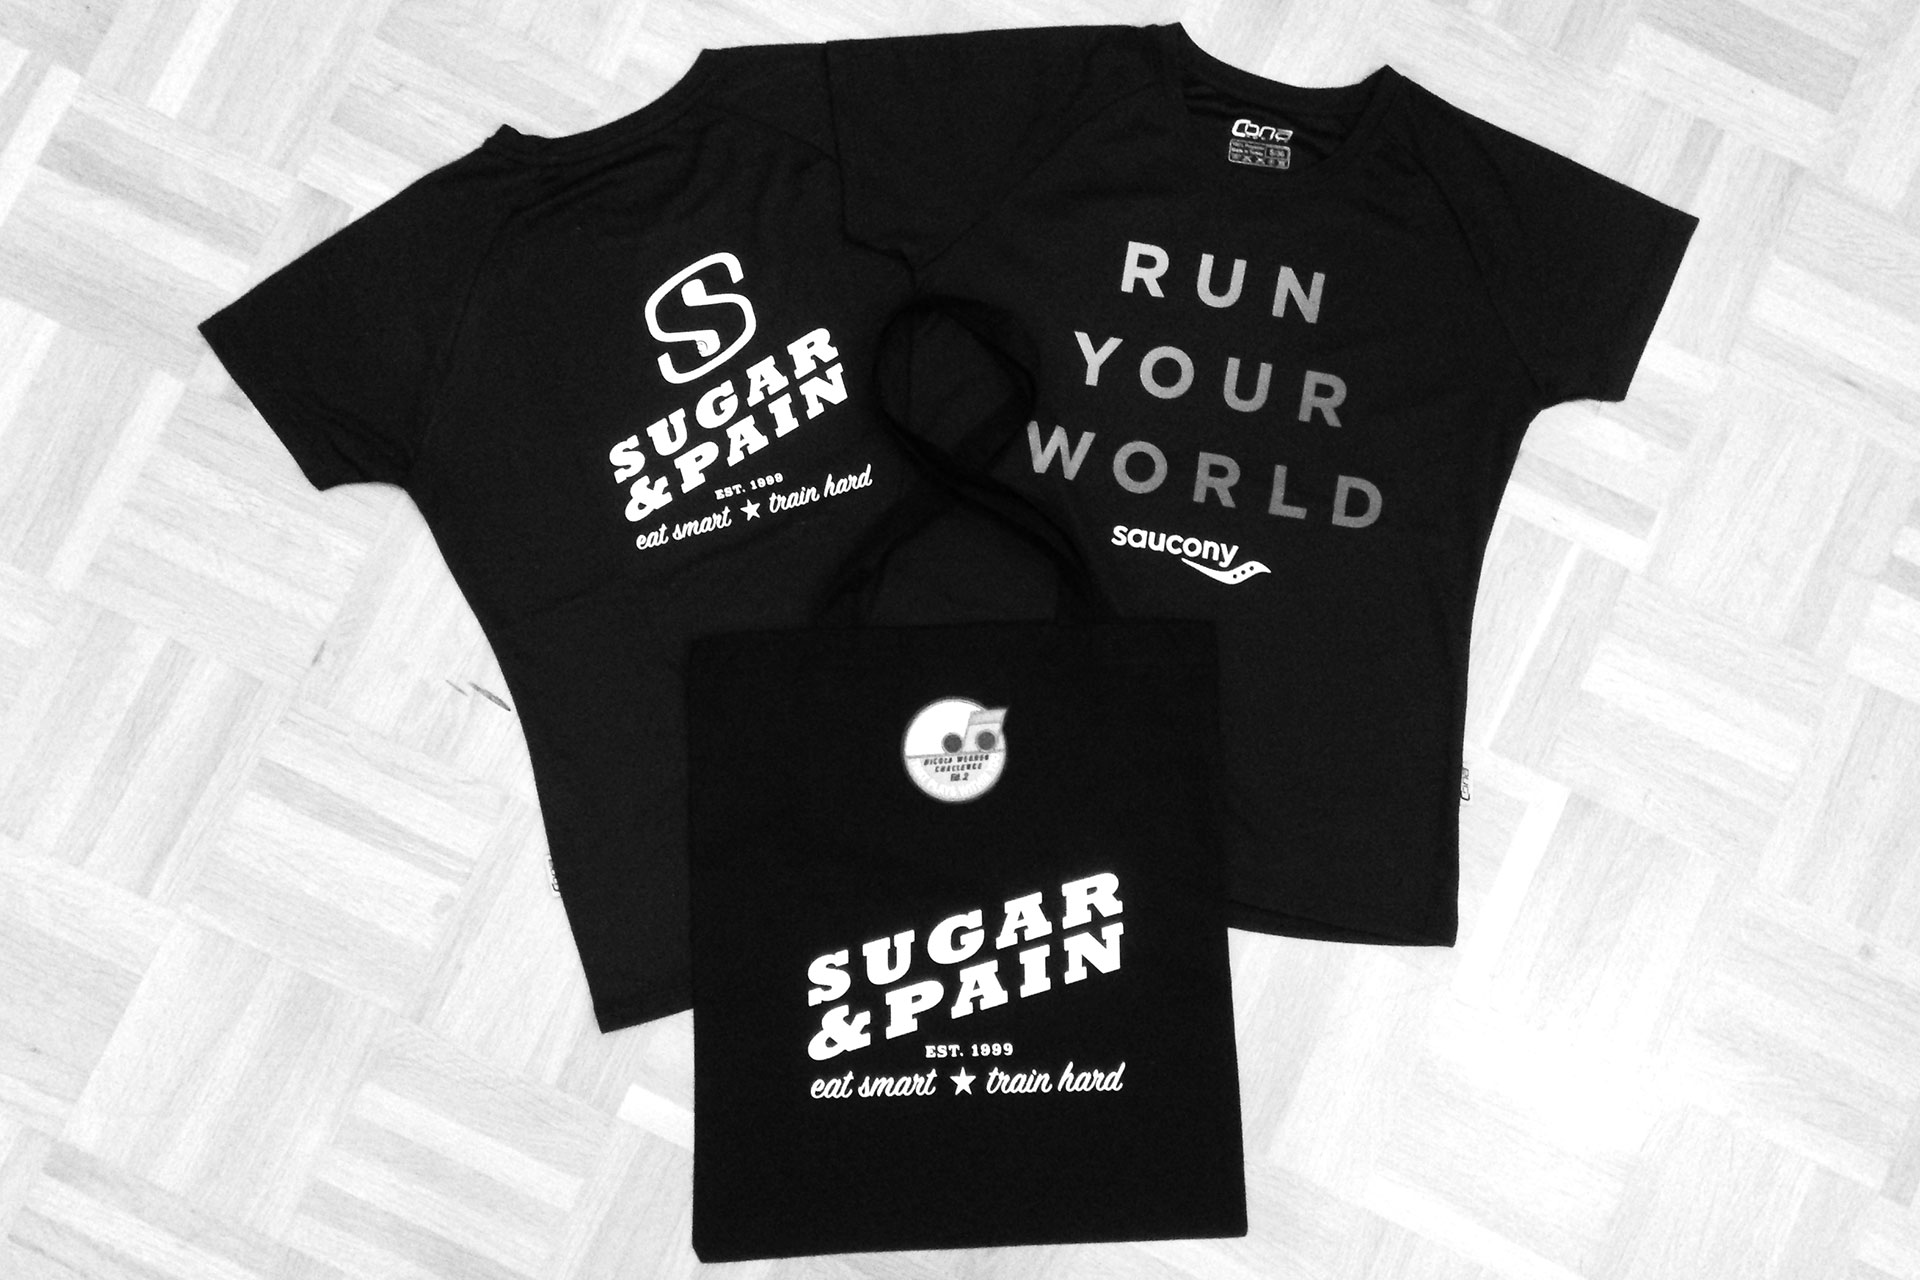 MARATHON MÜNCHEN 2017 SUGAR & PAIN TEAM Run Four Good mit Speed, Spaß und viel / Limited Edition SUGAR & PAIN RUNNING Shirt "Run Your Word" plus SUGAR & PAIN JUNK Bag